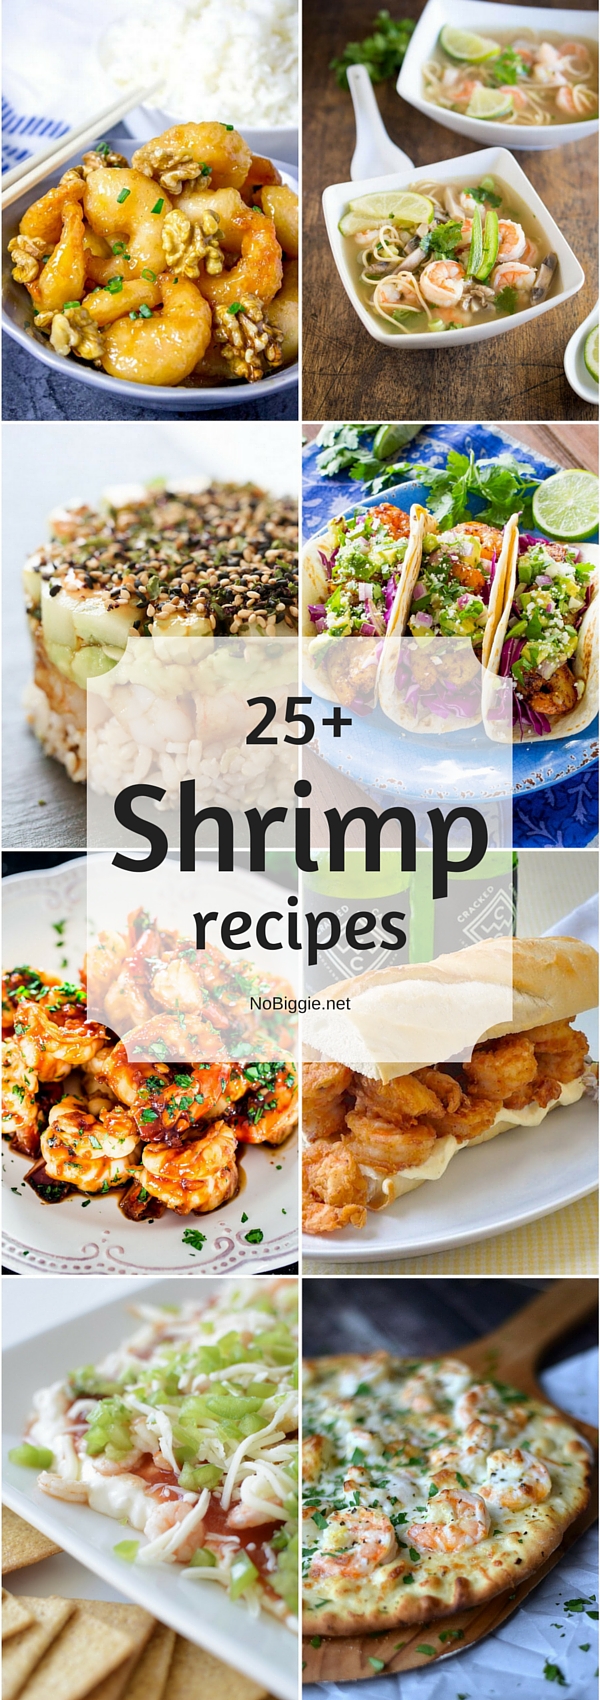 25+ Shrimp recipes | NoBiggie.net